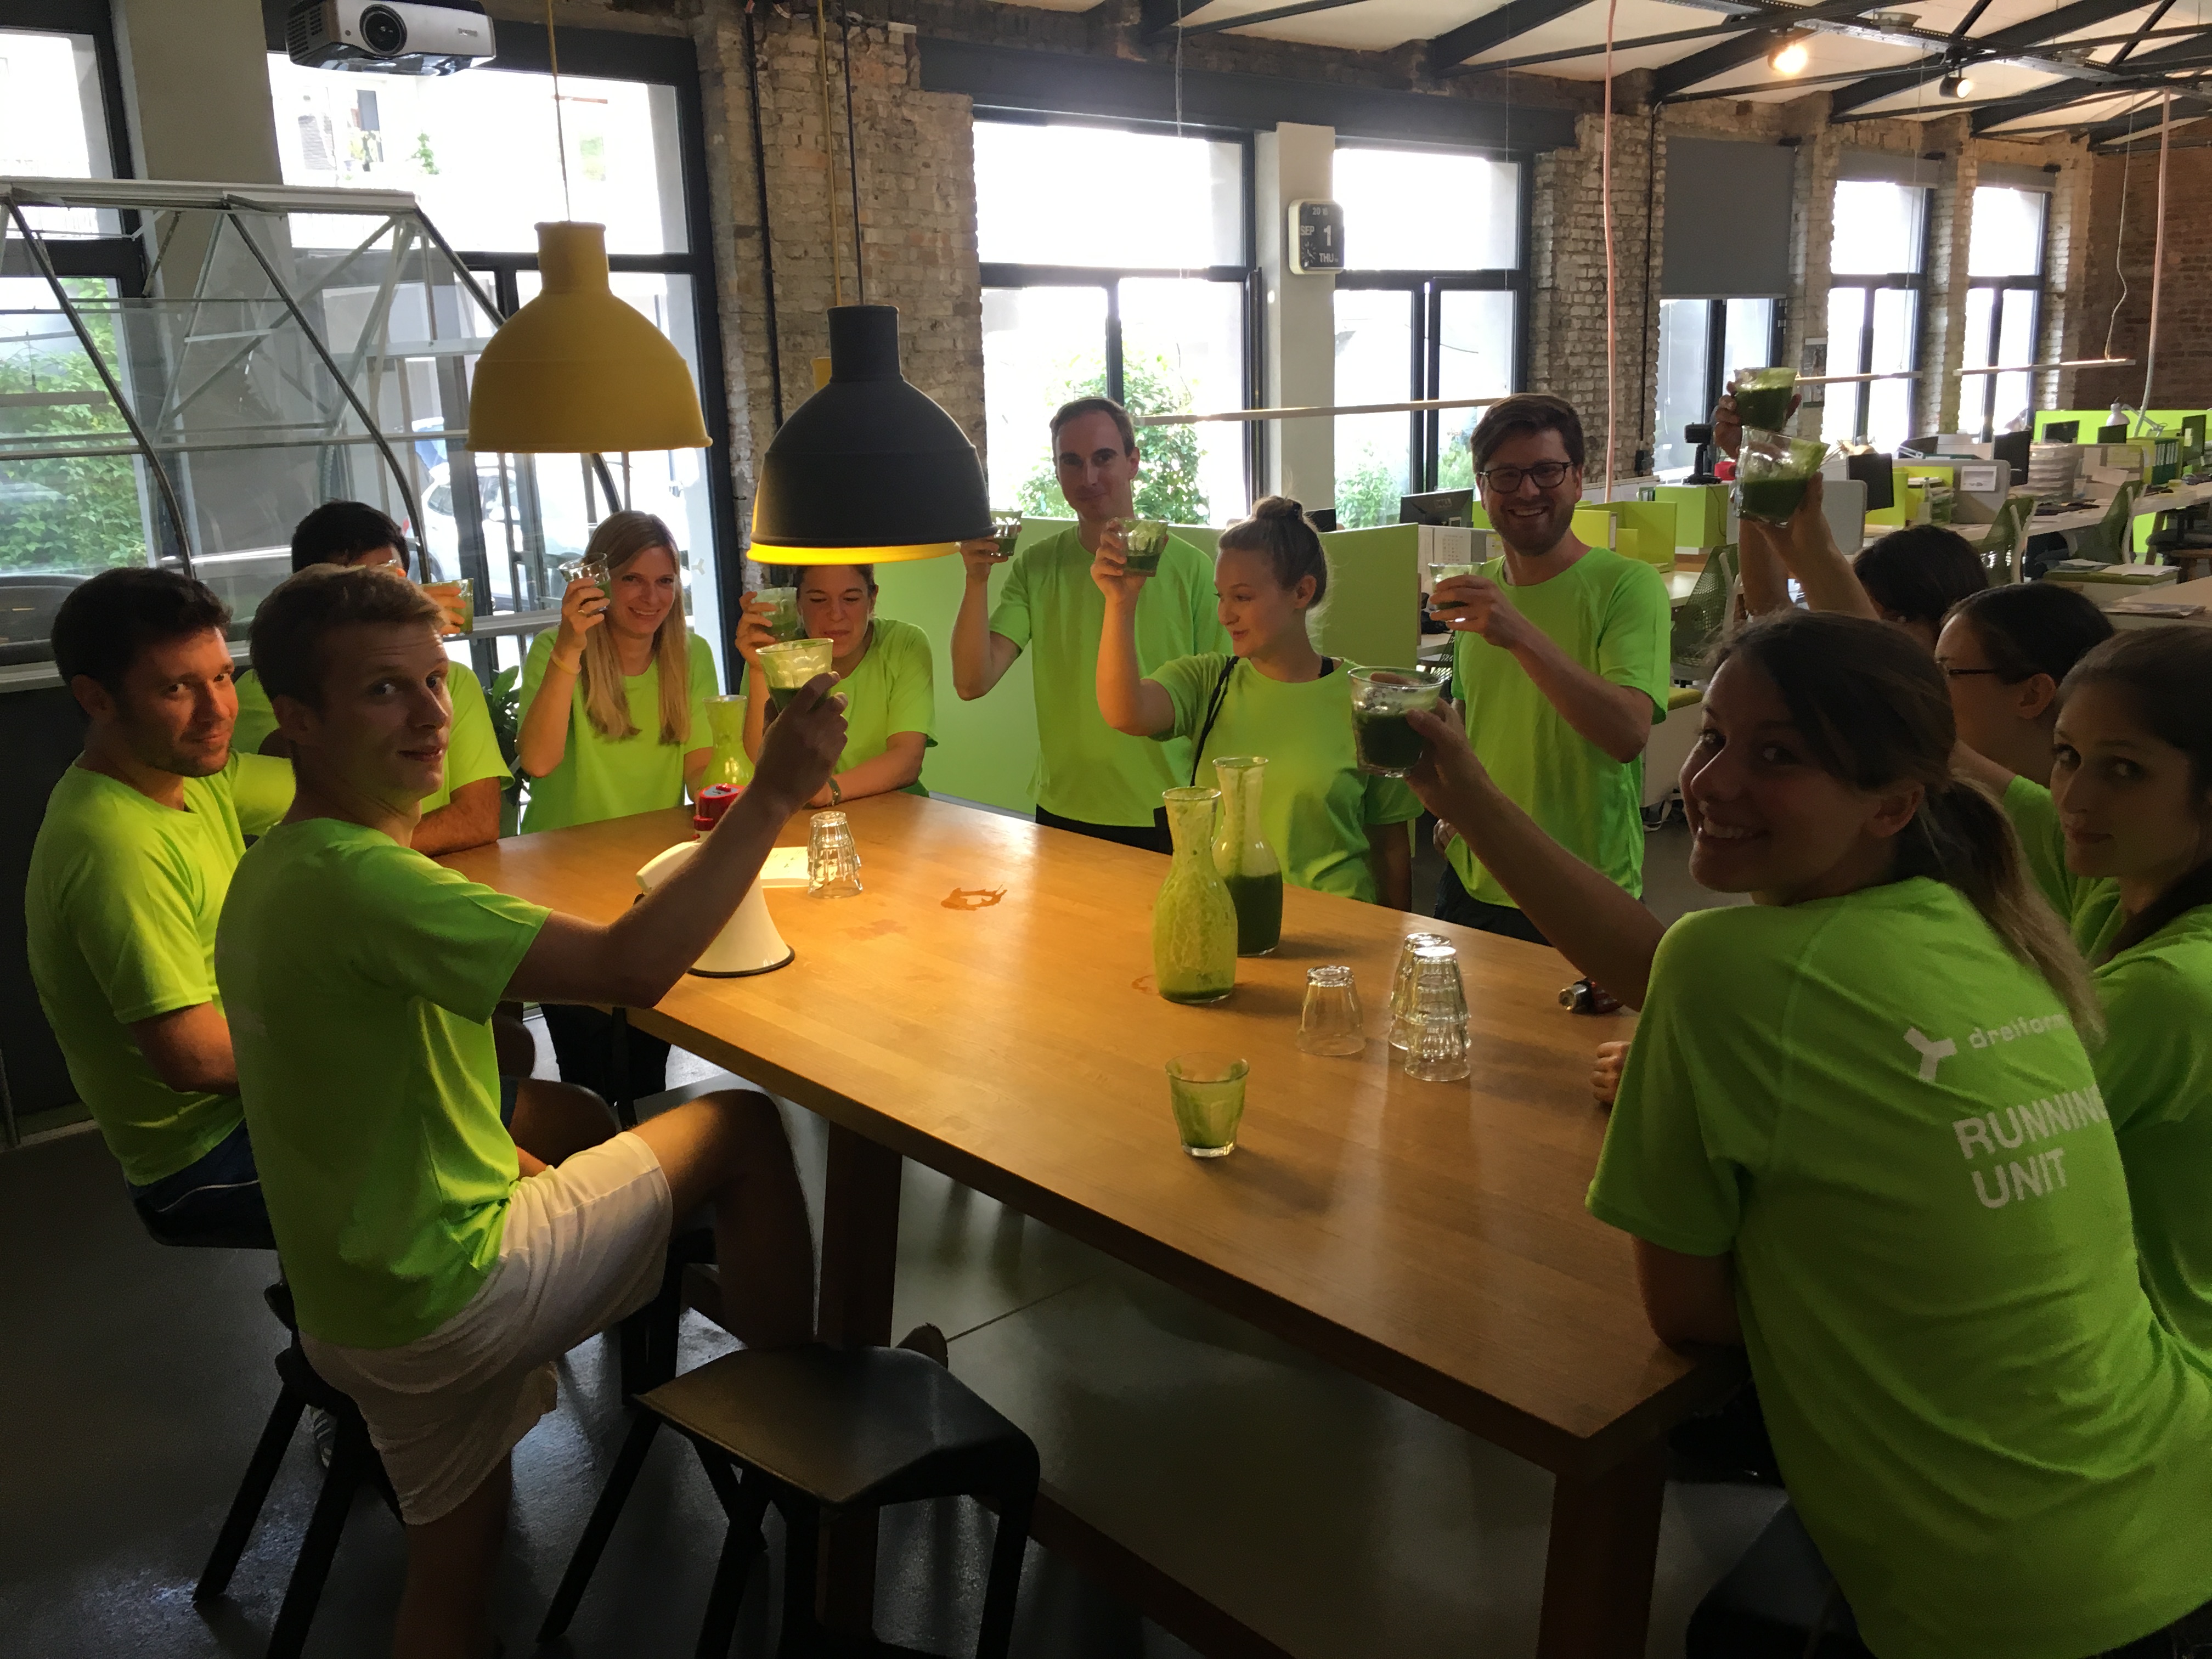 Foto Gruppenbld team dreiform Küche grüne Trikots trinken